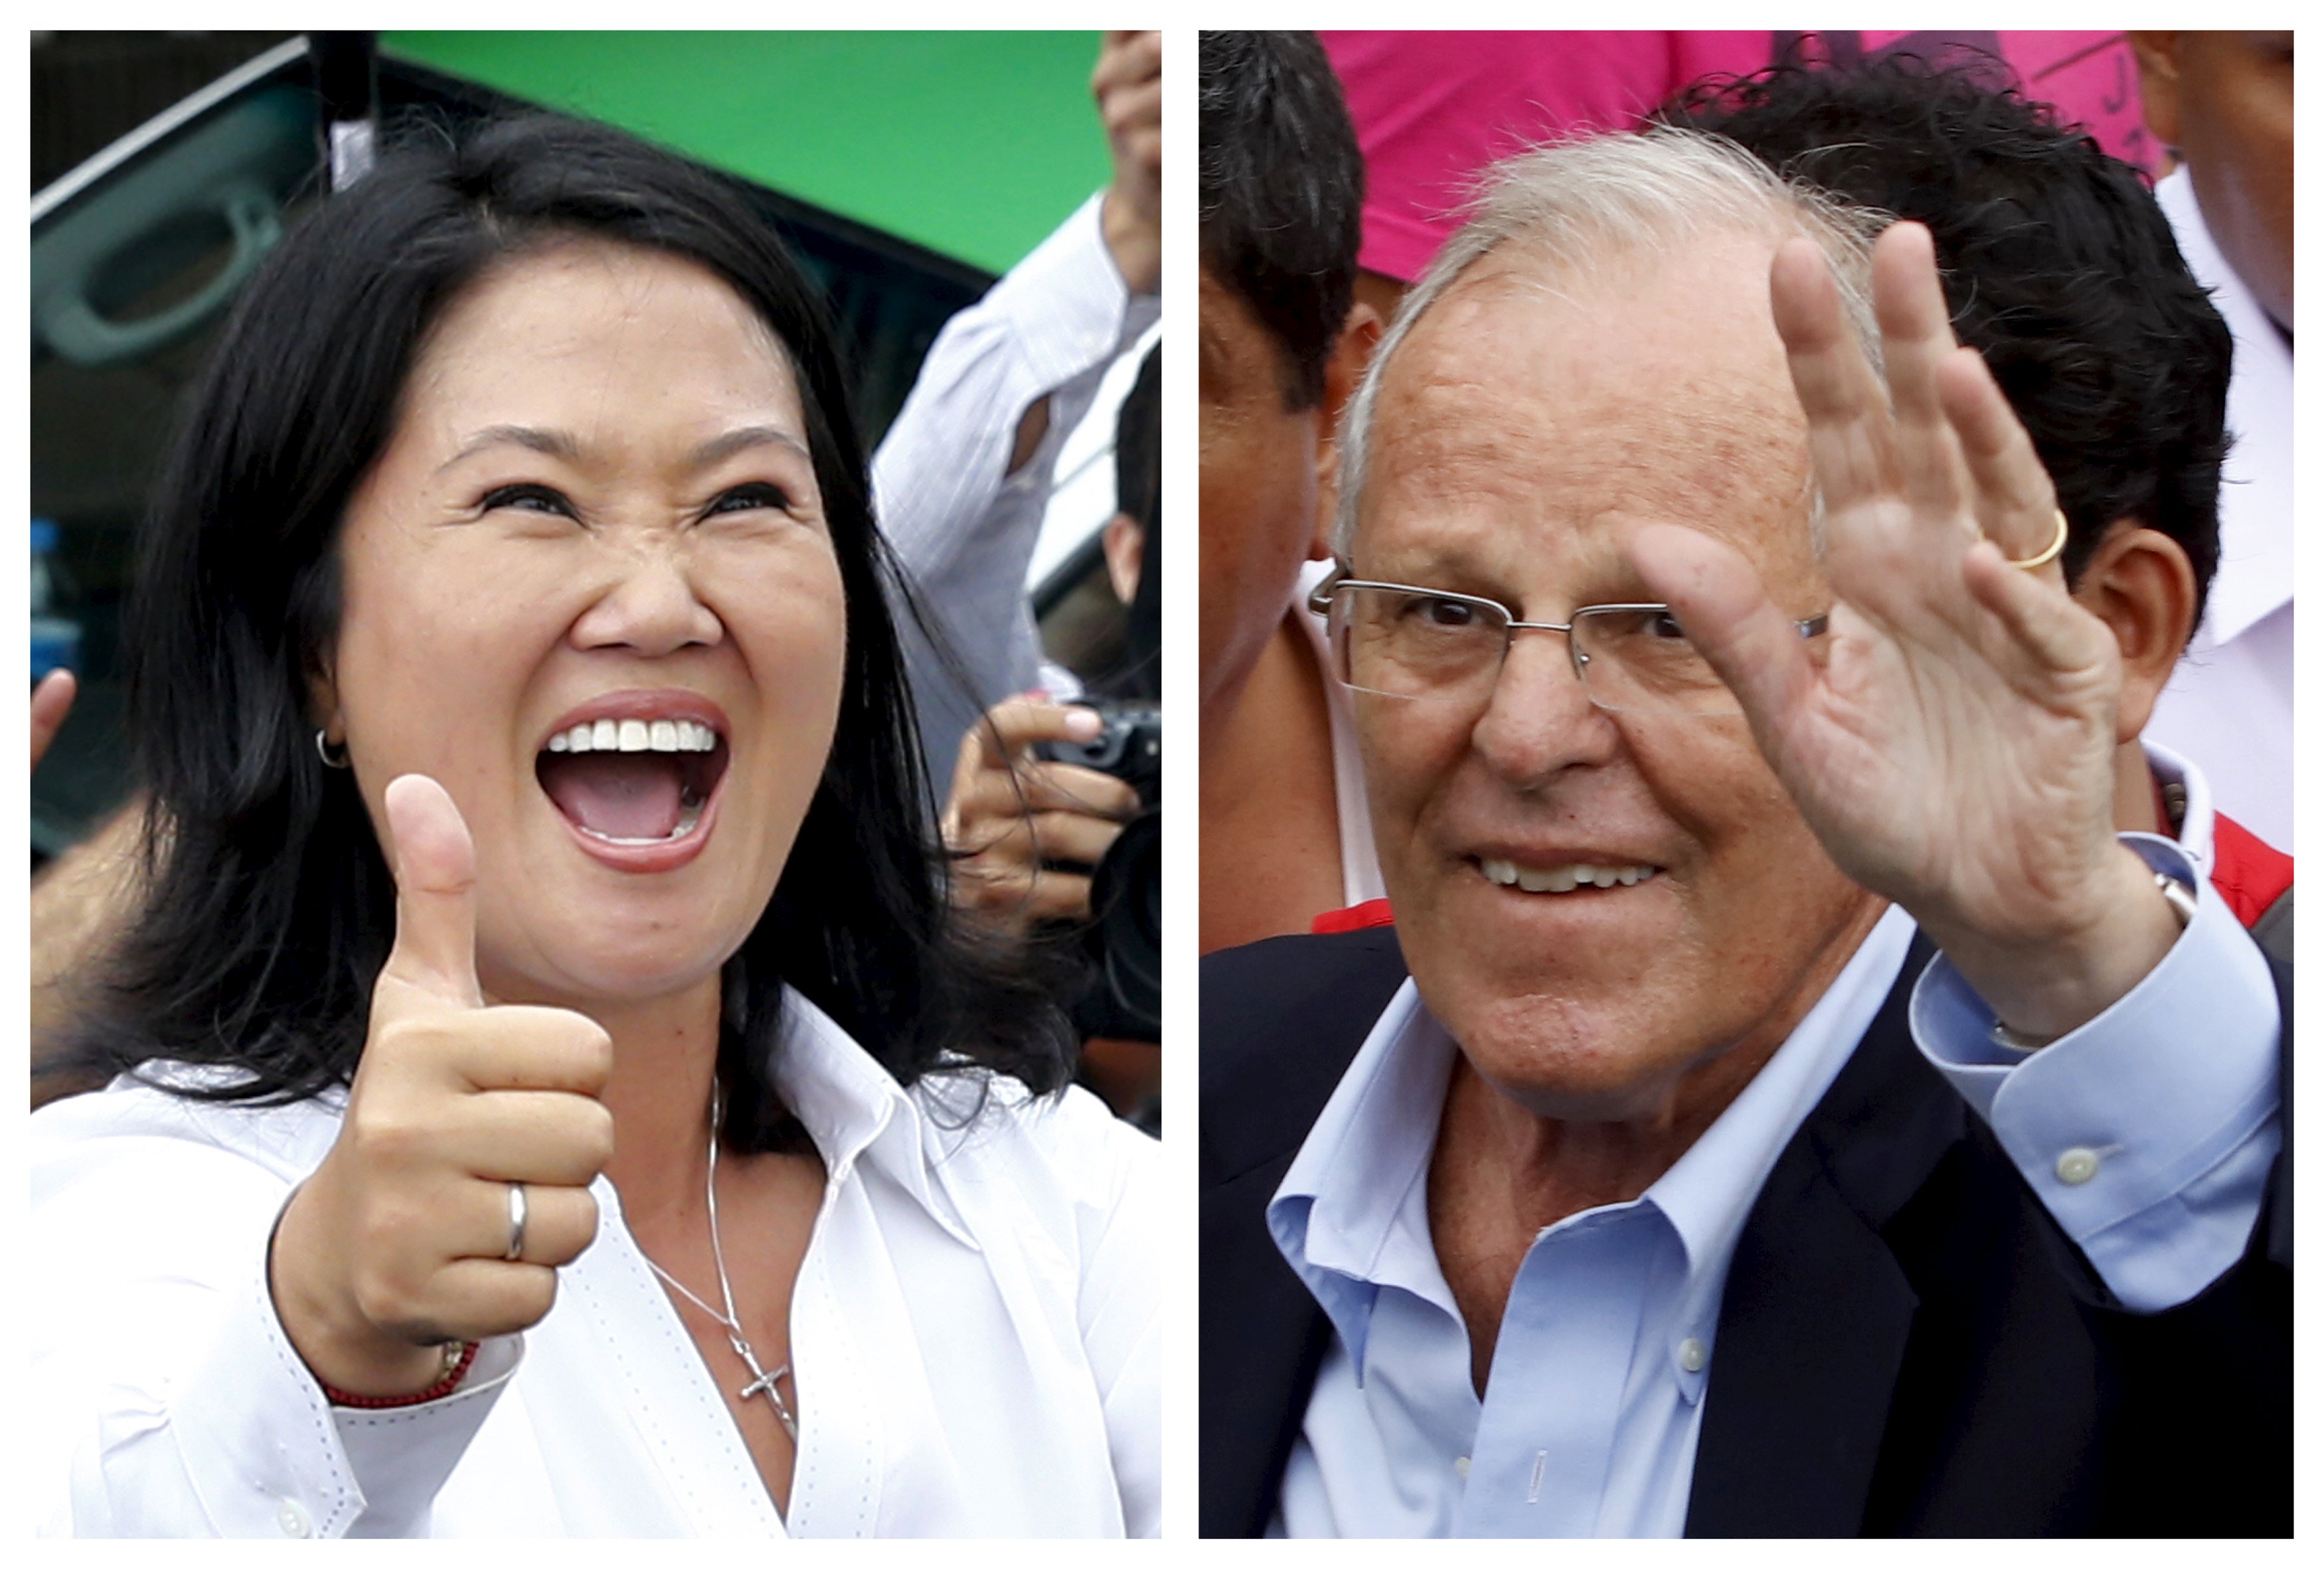 El pueblo peruano irá a las urnas el próximo 5 de junio para escoger entre Keiko Fujimori o Pedro Pablo Kuczynski en la segunda vuelta por la presidencia de Perú.